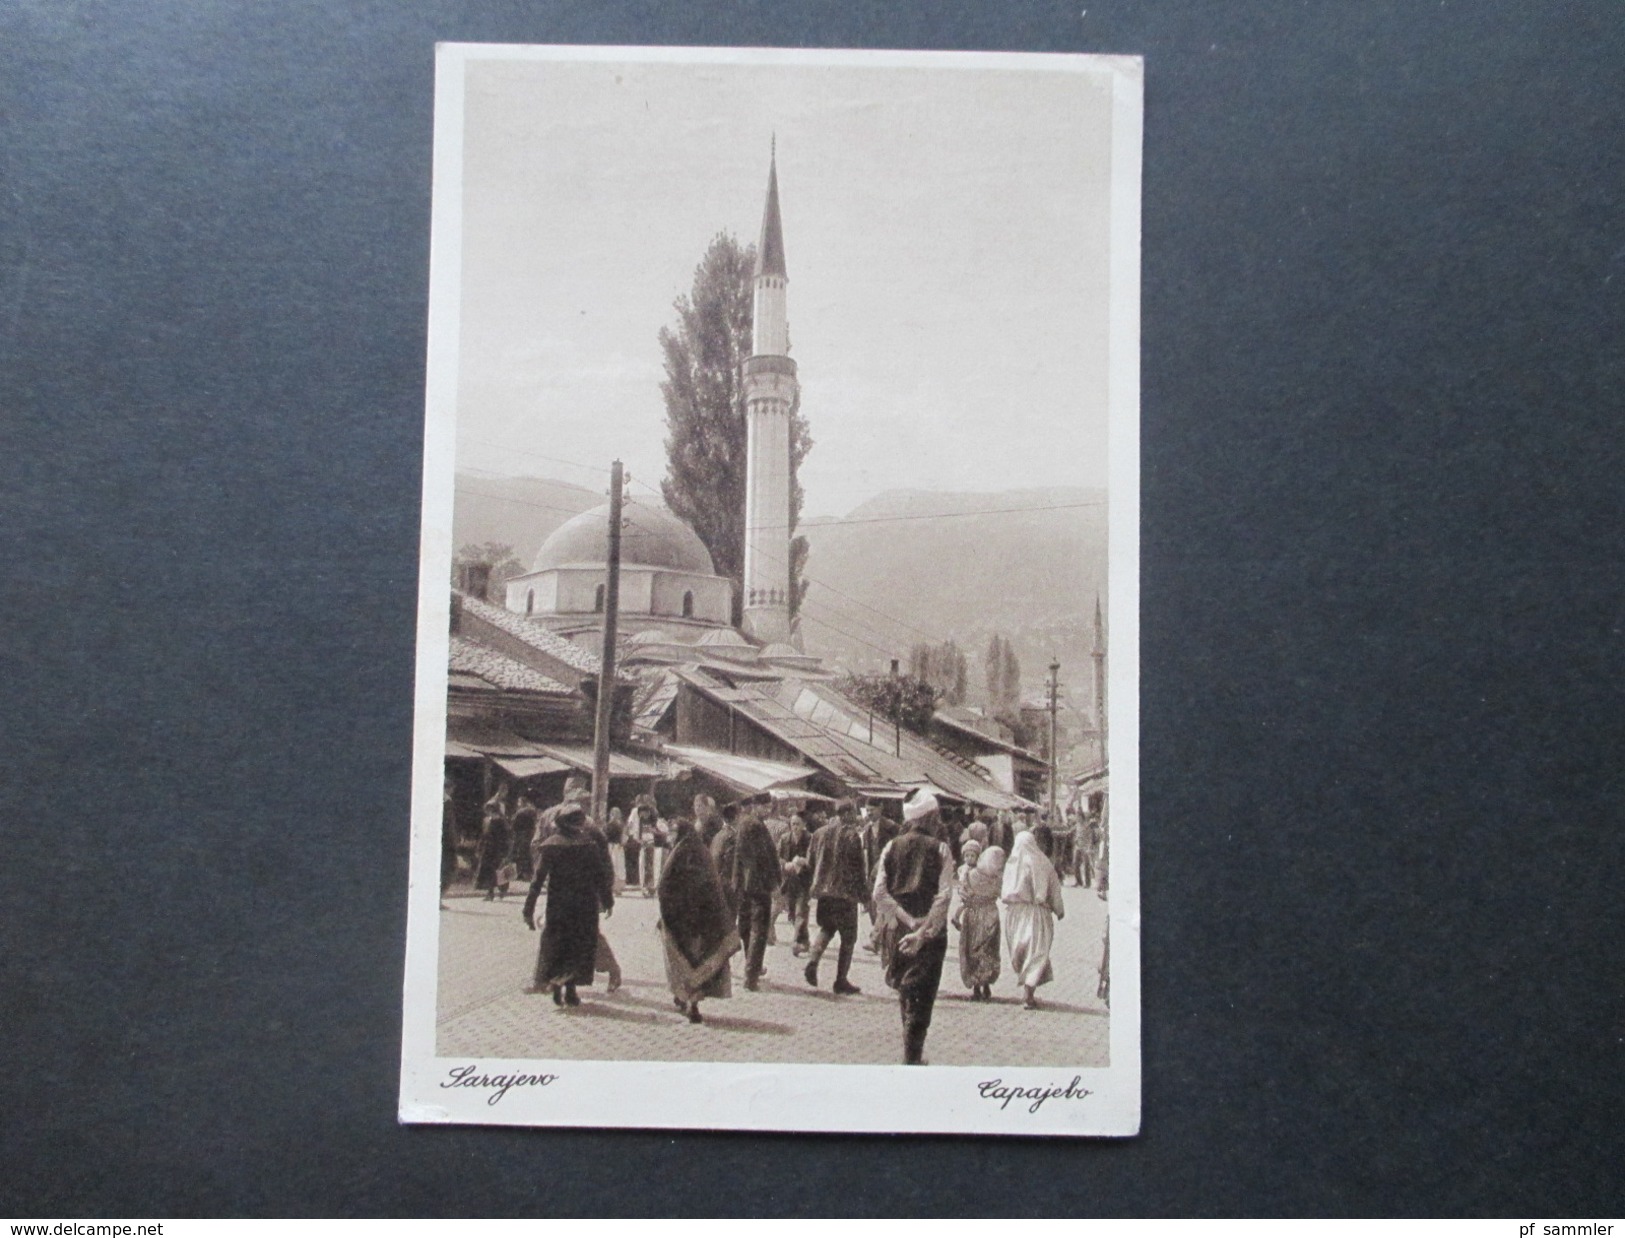 AK 1929 Bosnien / SHS. Dapajebo / Sarajewo. Einheimische / Moschee / Kirche. An Prof. Dr. Carl Patsch. Social Philately - Bosnia Y Herzegovina